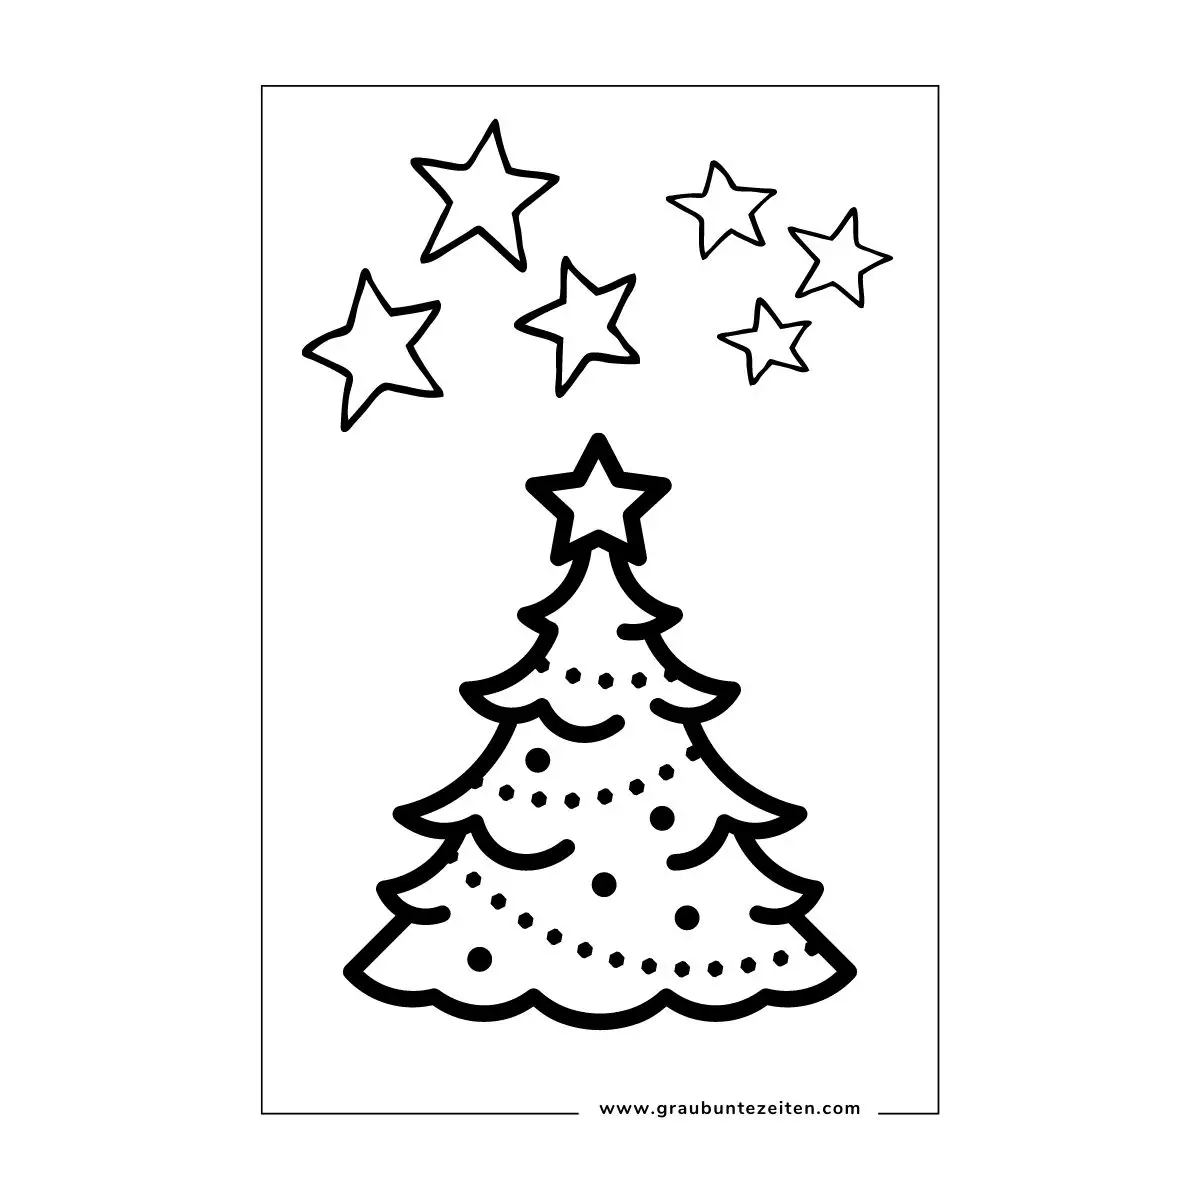 Weihnachtsbaum mit Stern auf der Spitze und Sternen im Hintergrund.